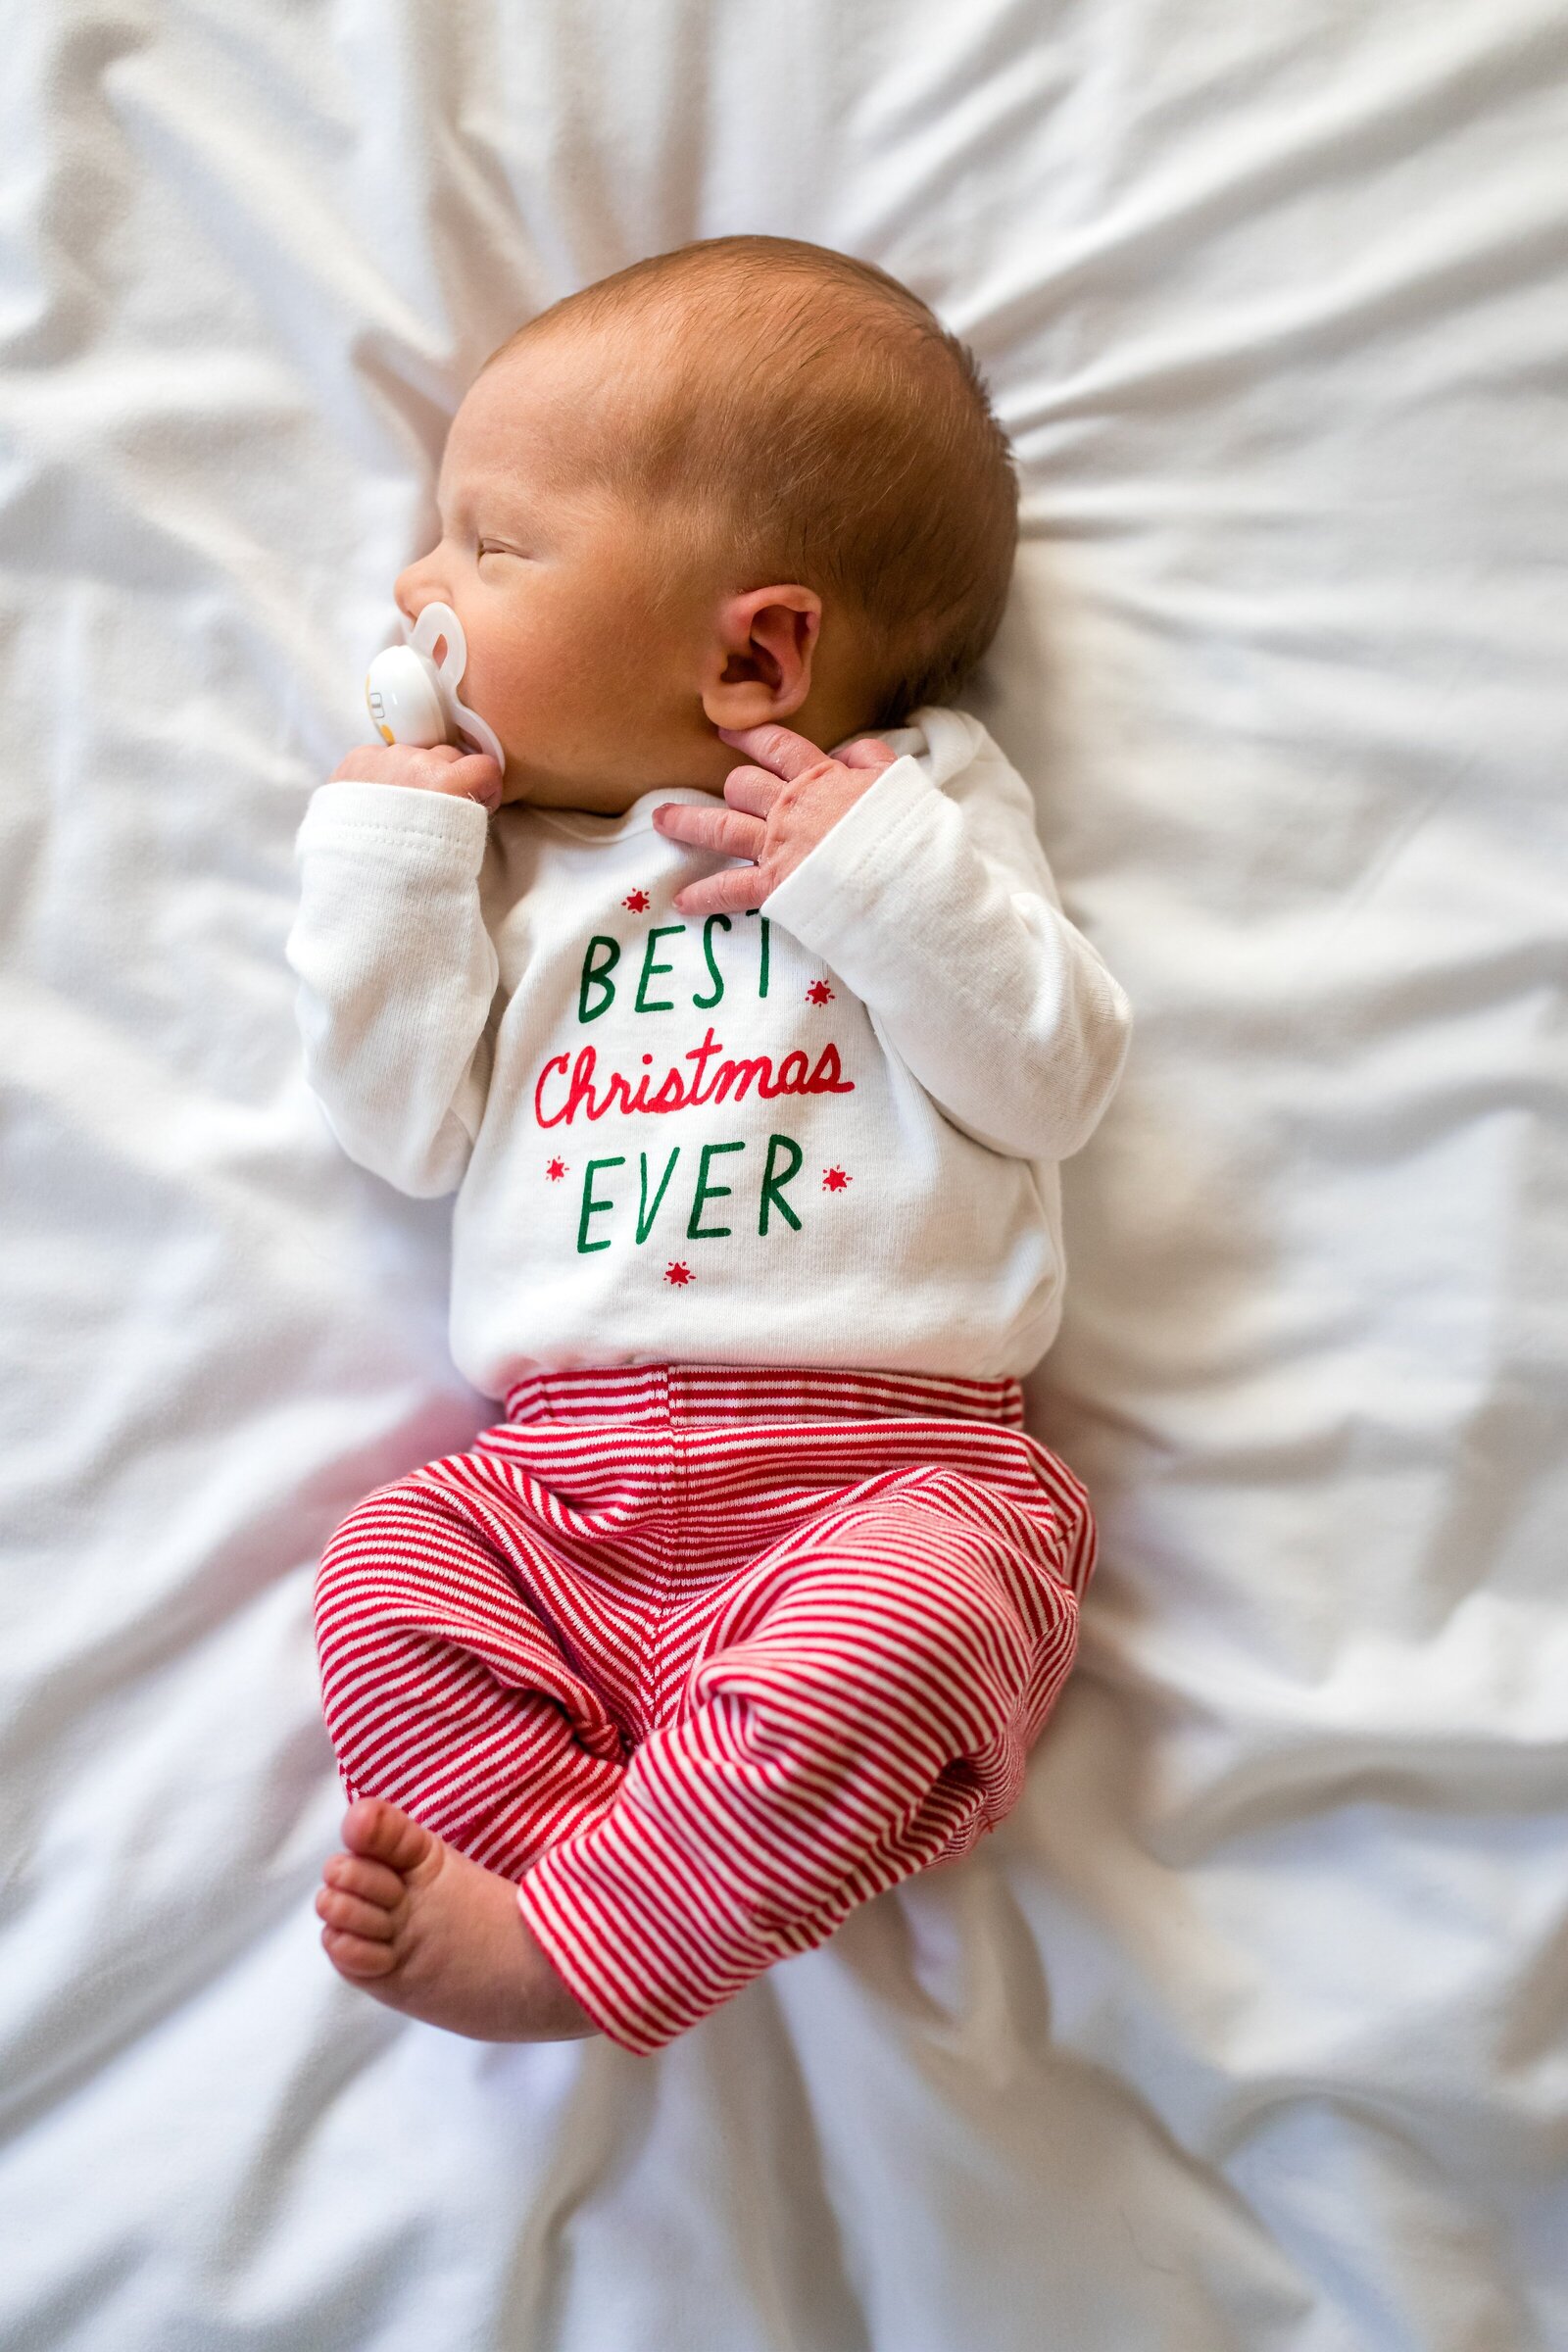 Newborn wearing Best Christmas Ever shirt